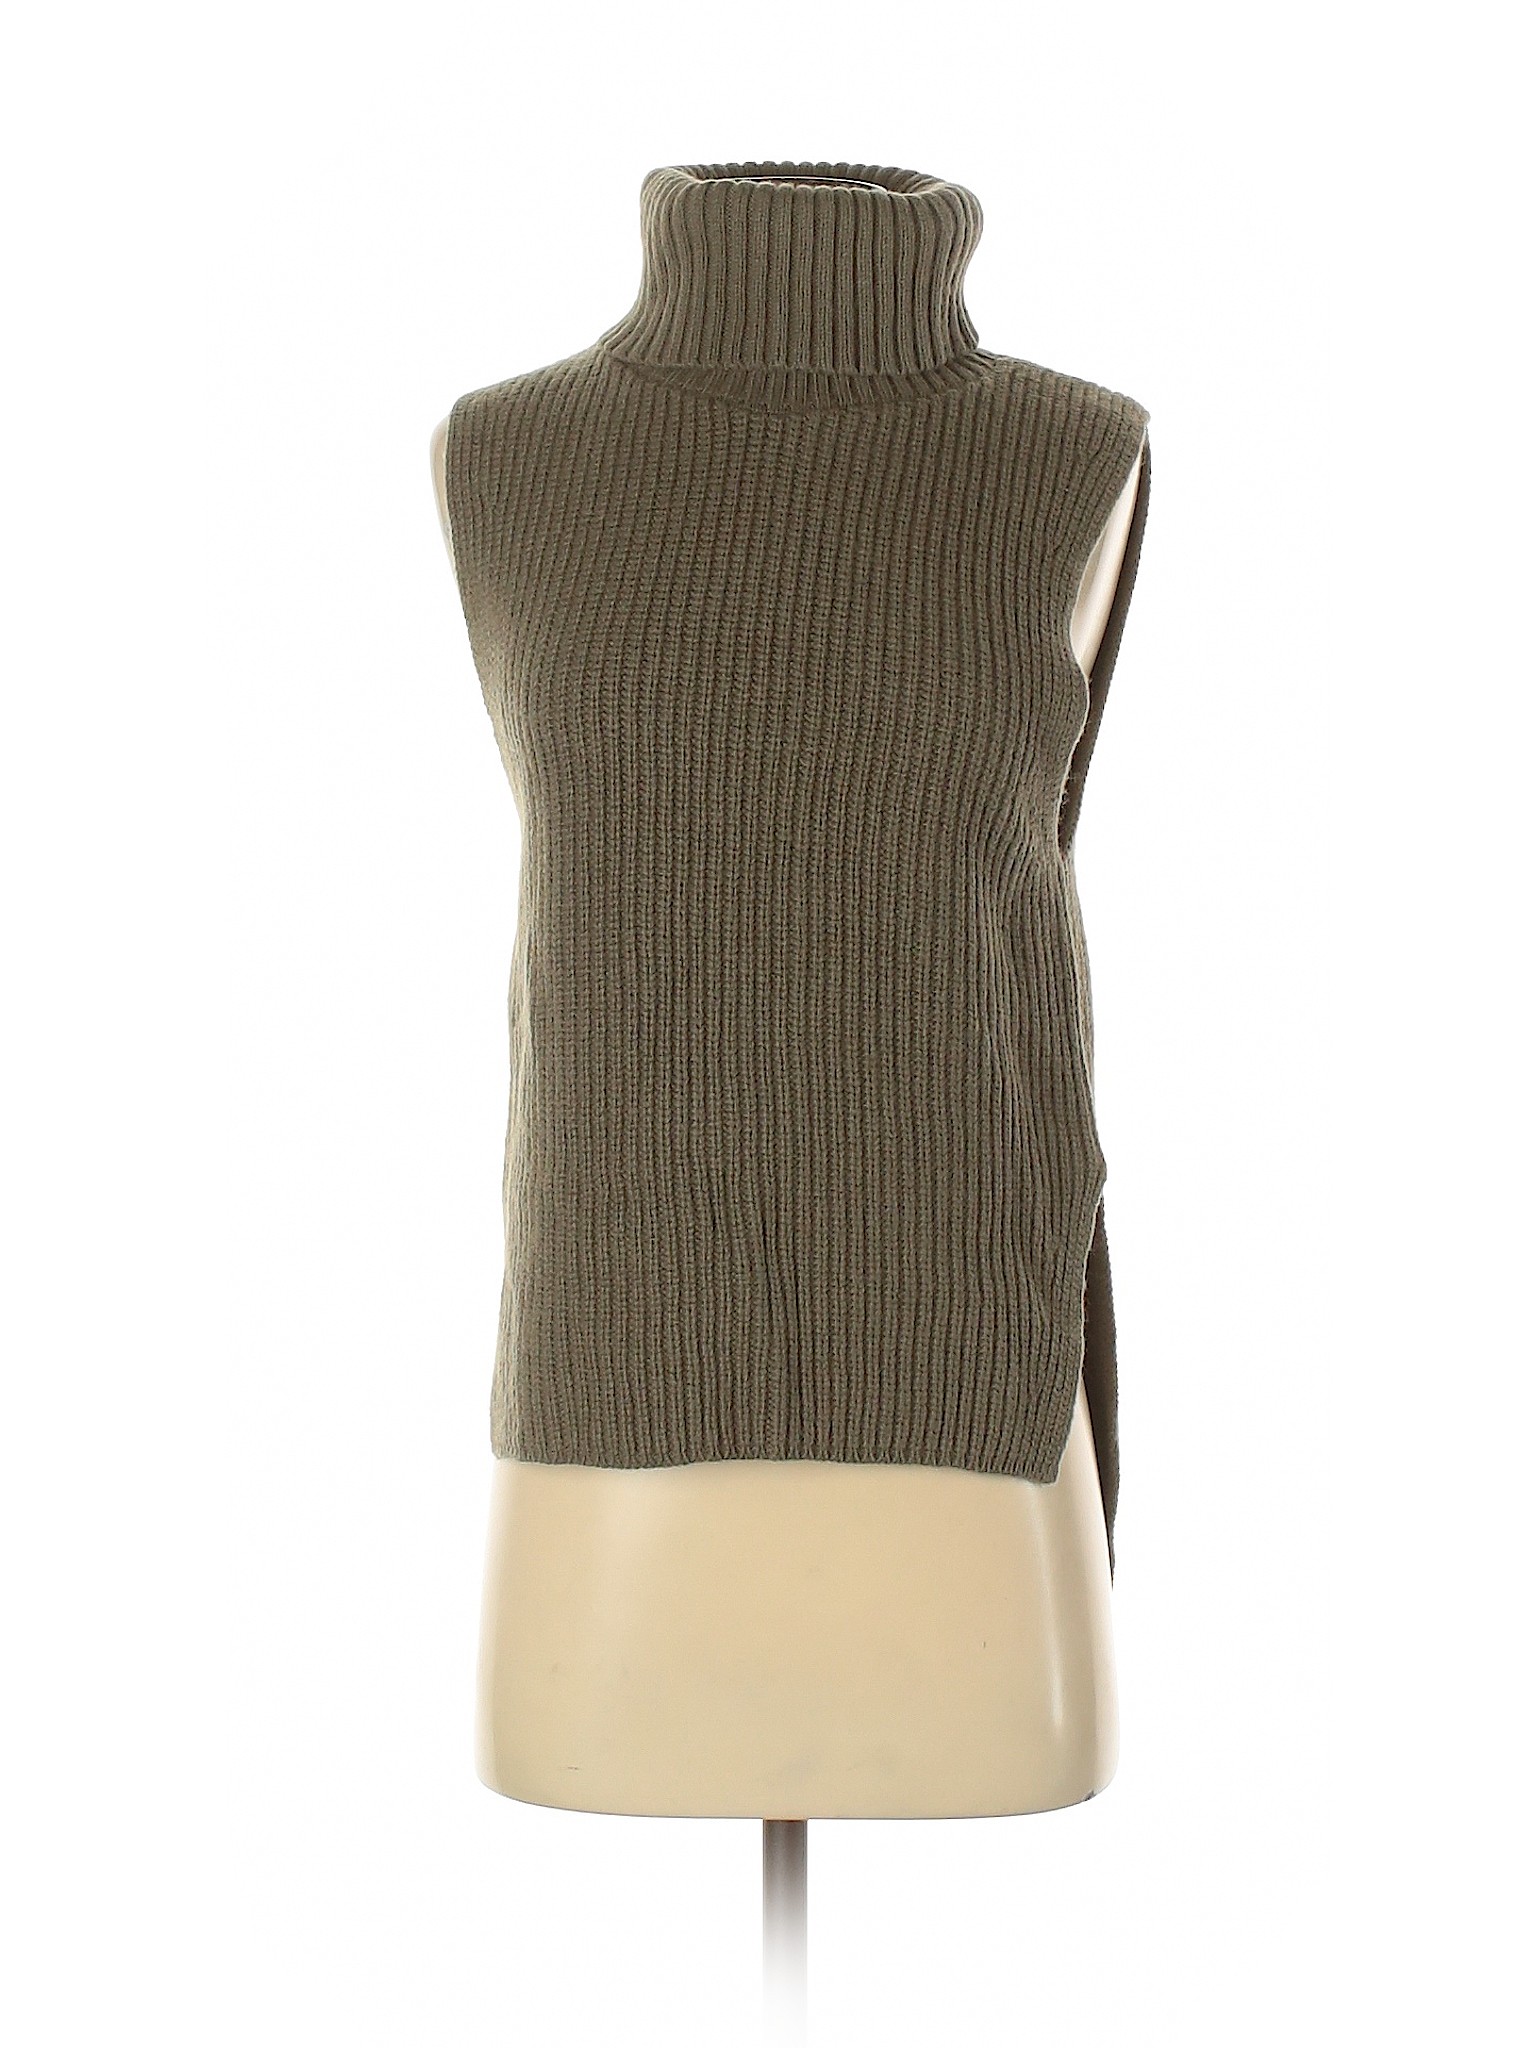  Uniqlo  Women Green Turtleneck  Sweater XS eBay